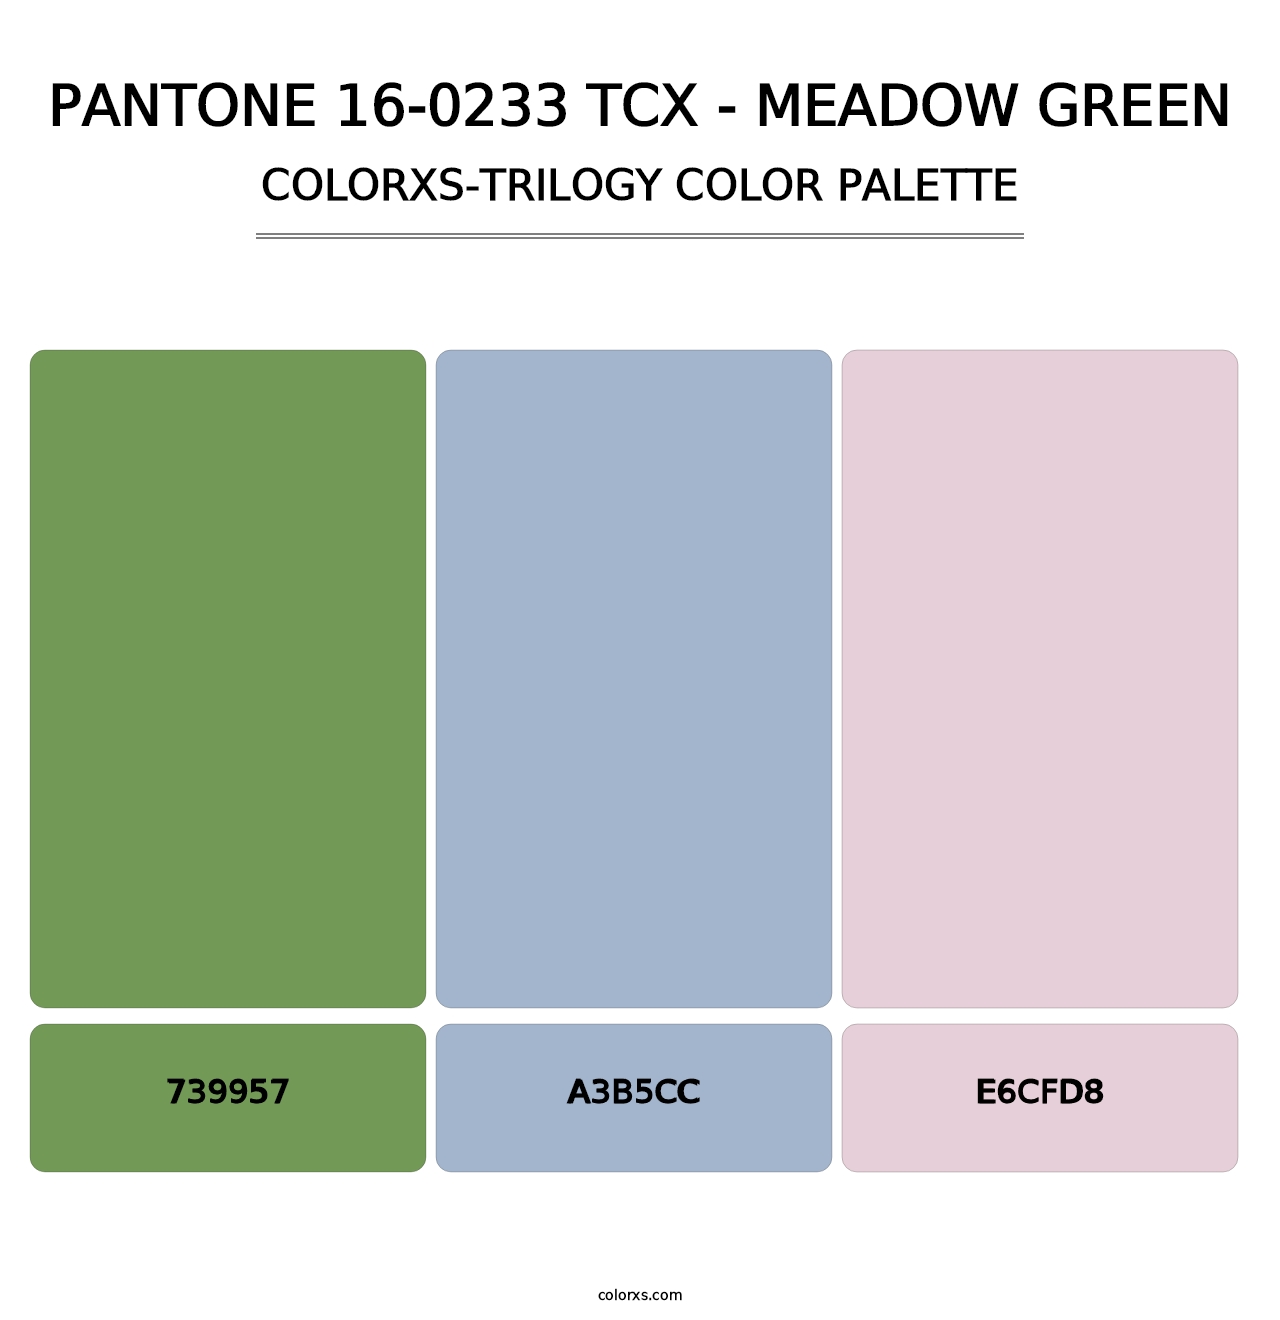 PANTONE 16-0233 TCX - Meadow Green - Colorxs Trilogy Palette